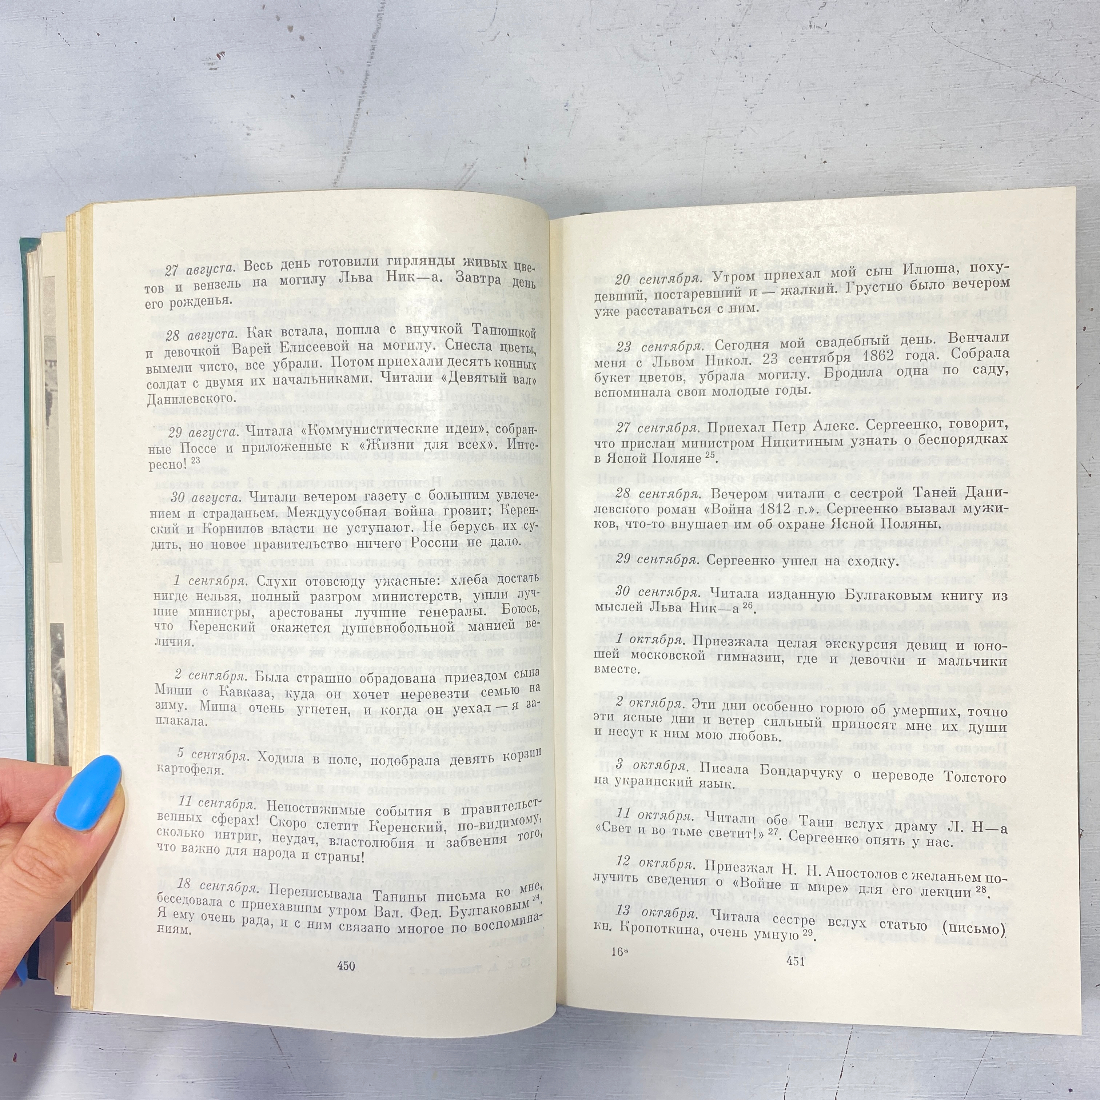 С.А. Толстая, "Дневники", есть дефекты. Изд. художественная литература, 1978г. Картинка 15